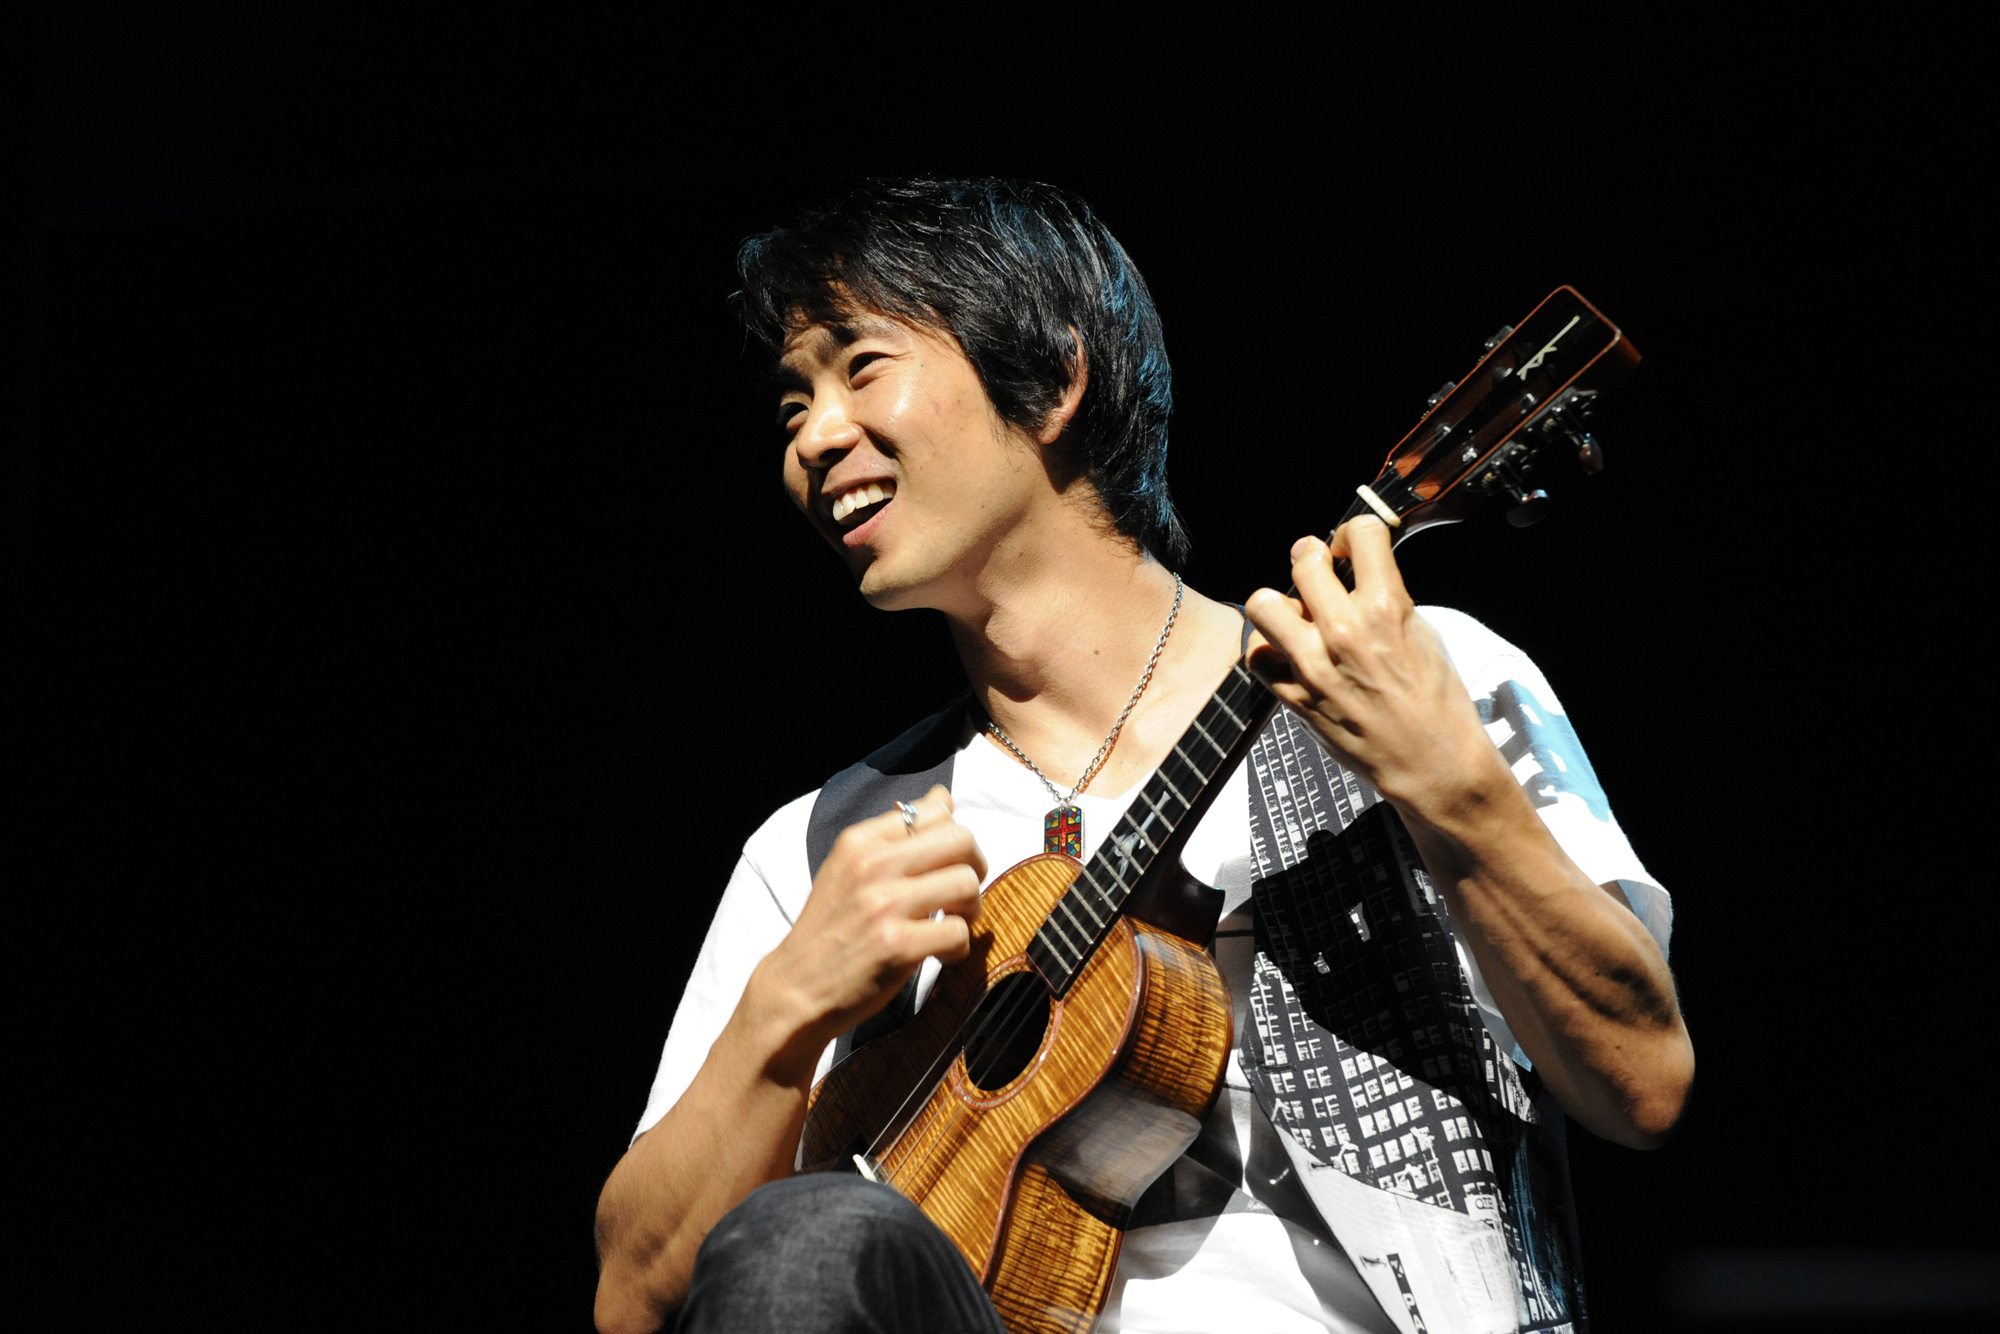 Ryota Mori
Jake Shimabukuro will perform Jan. 21 at the Aladdin Theater in Portland.